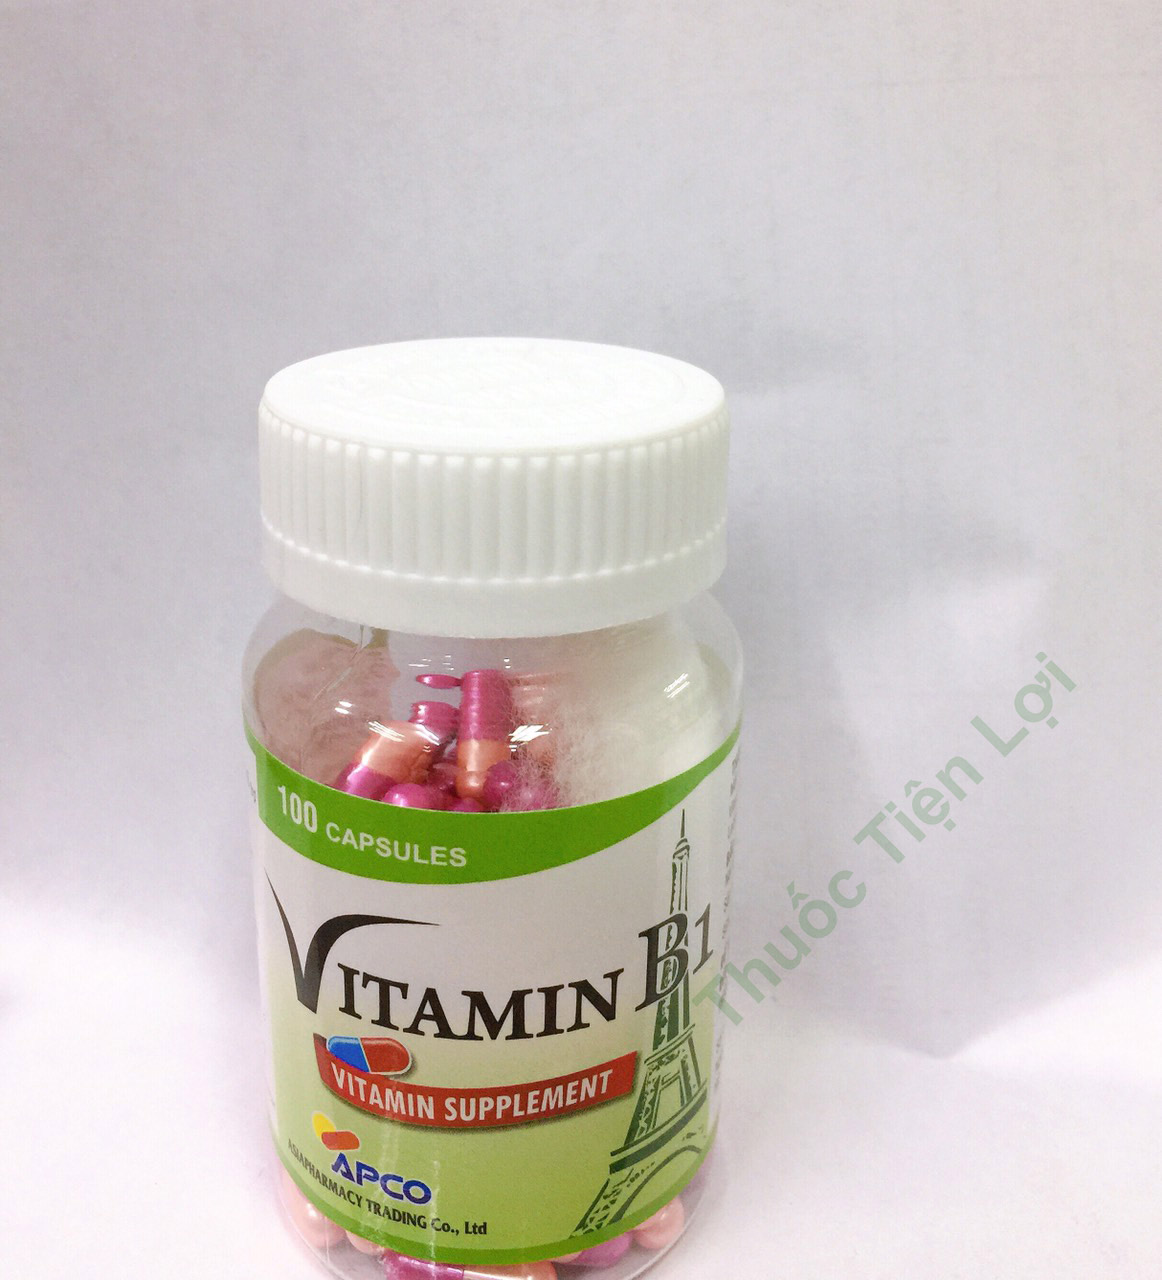 Vitamin B1 Apco có tác dụng gì và cách sử dụng như thế nào?